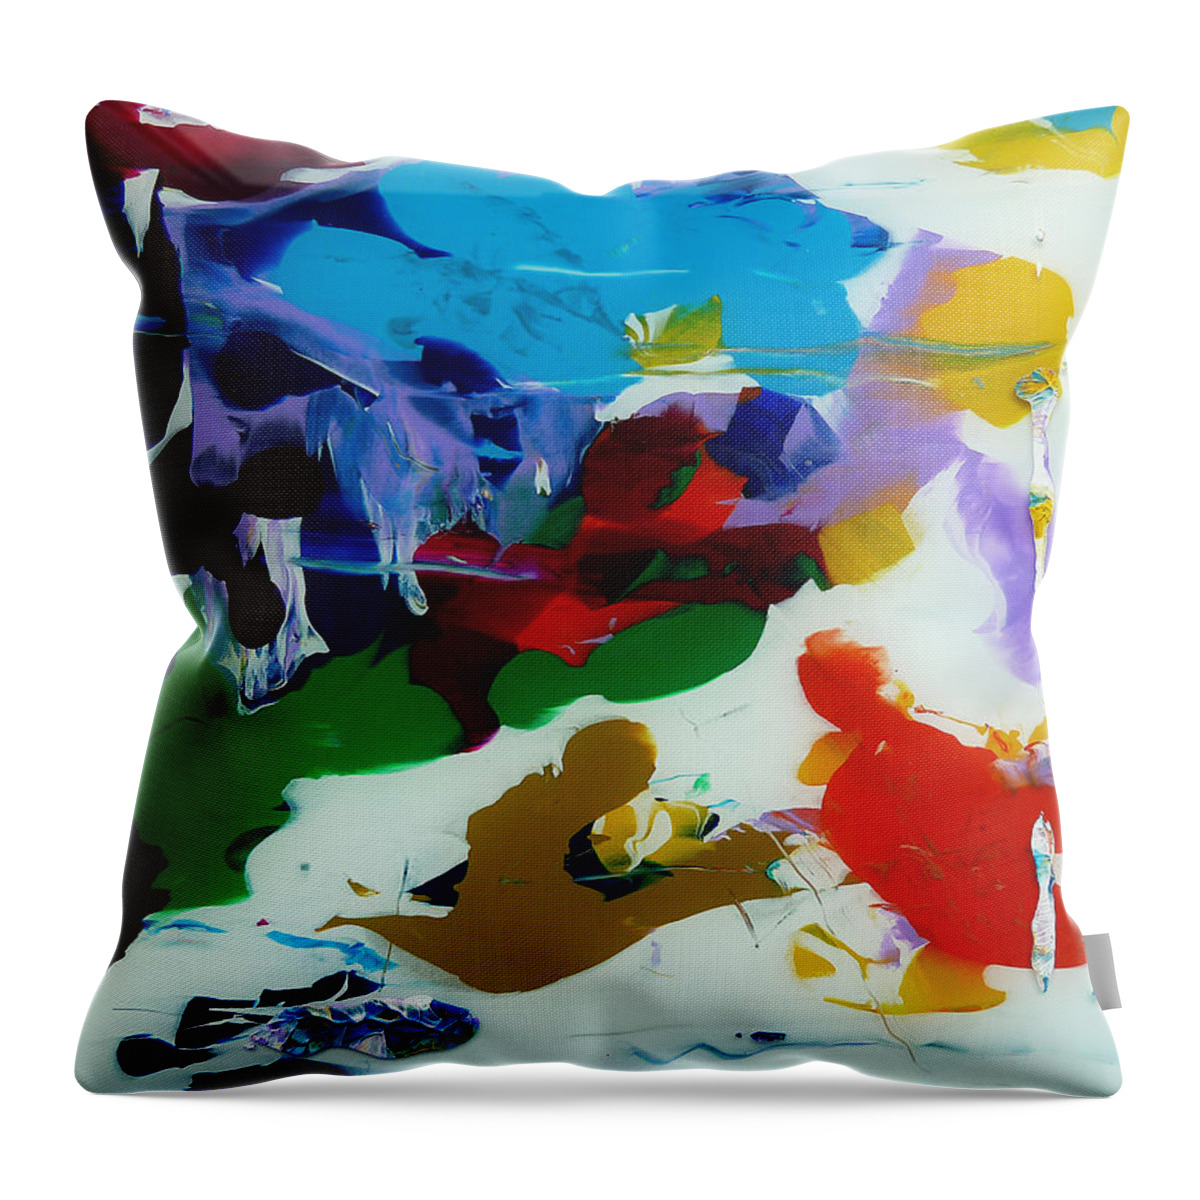 Derek Kaplan Art Throw Pillow featuring the painting Rhapsody In White by Derek Kaplan